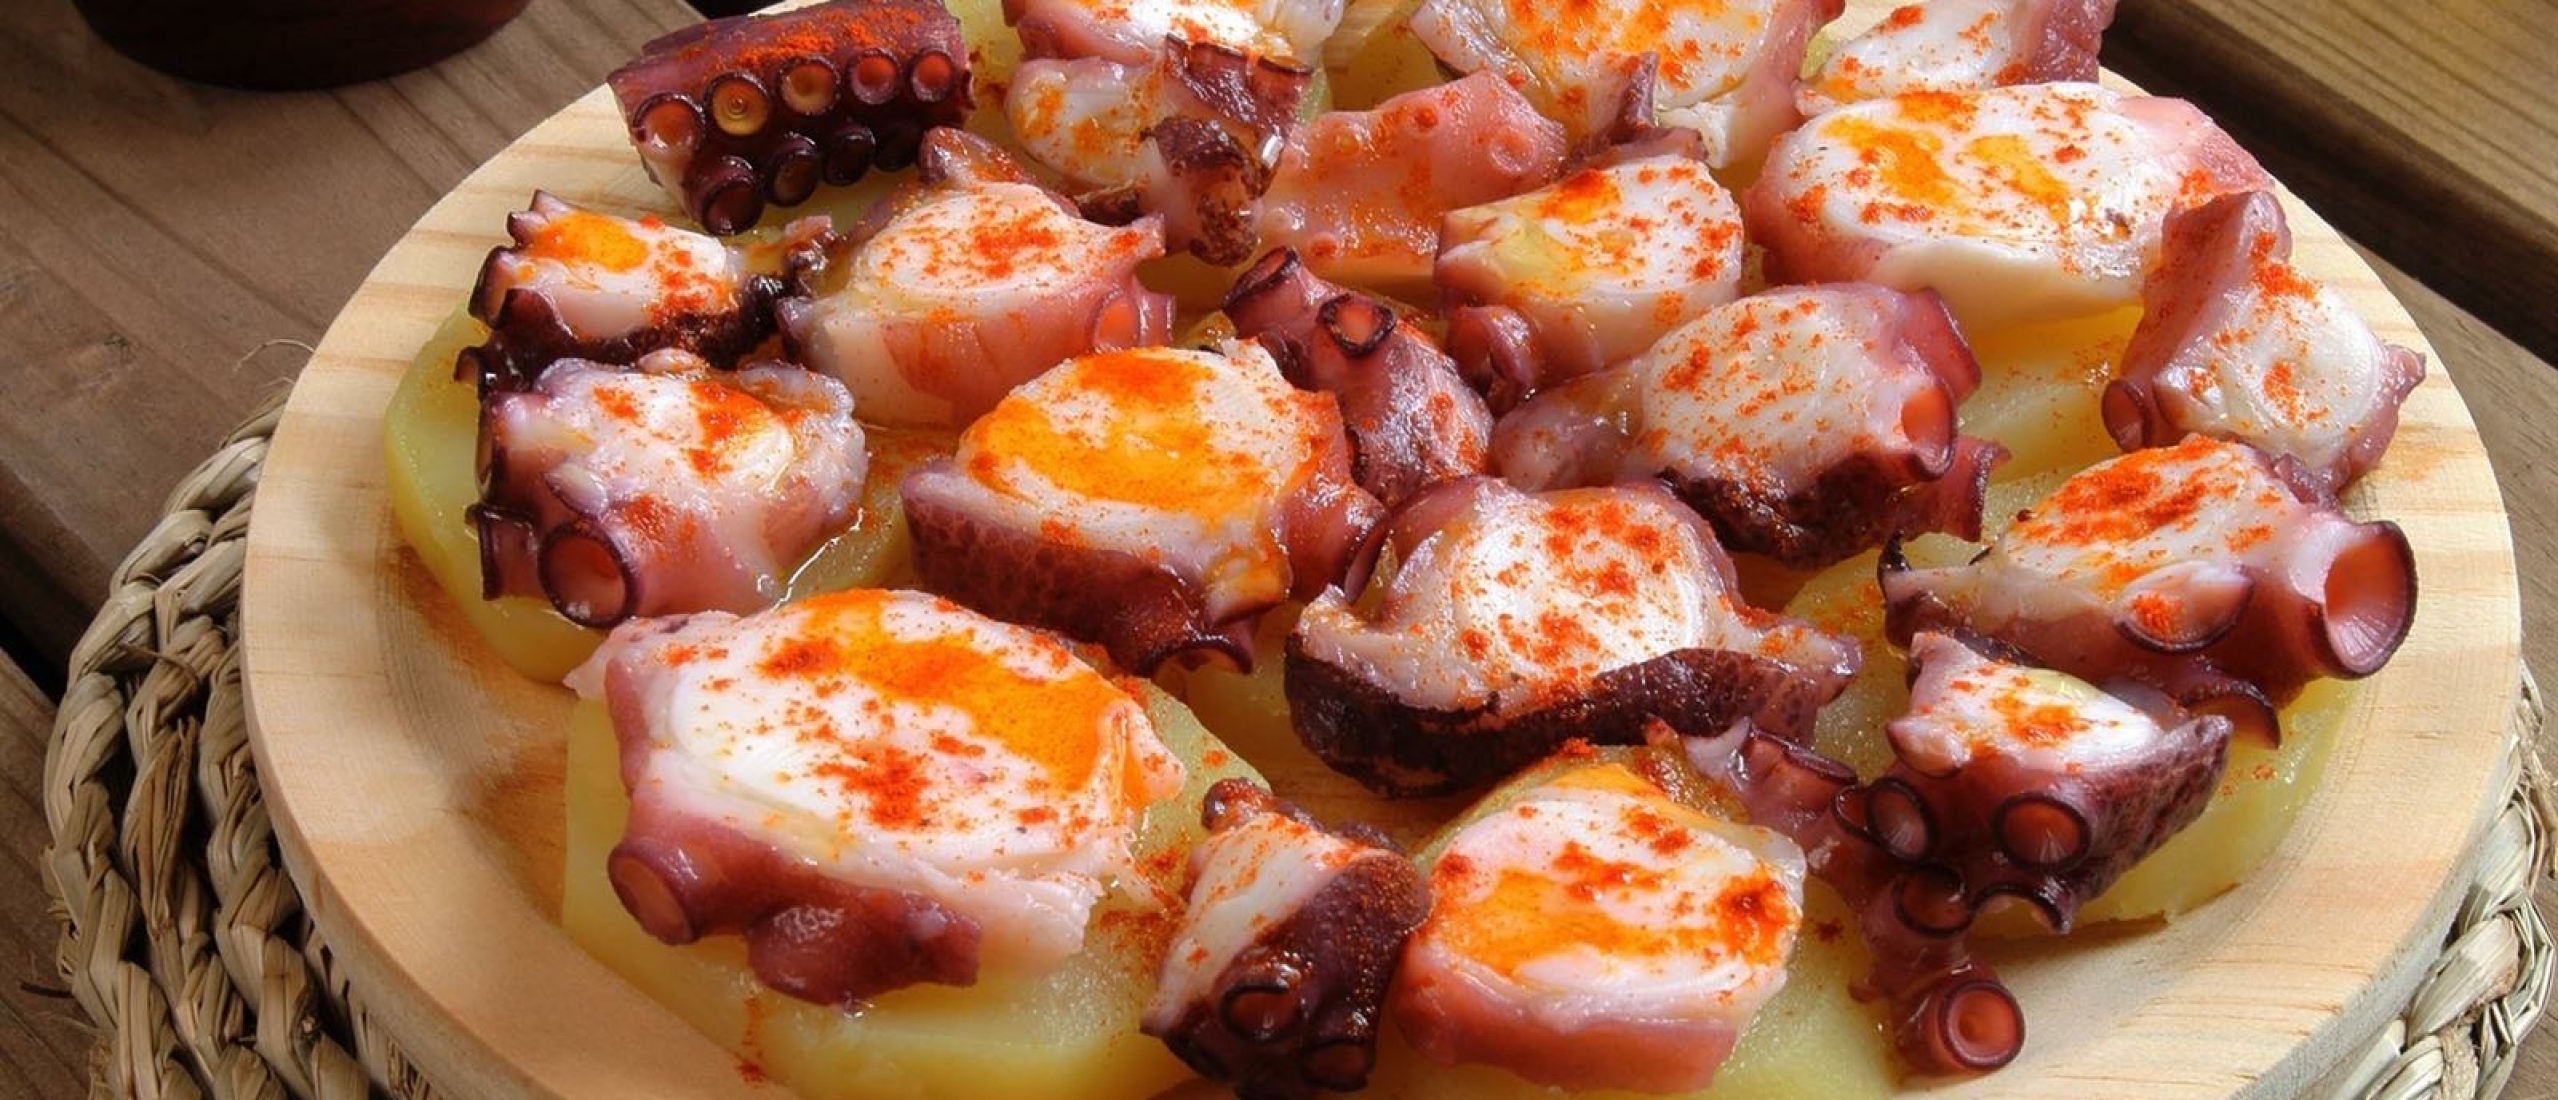 Wat schaft de pot? Maak kennis met de heerlijke Spaanse keuken.